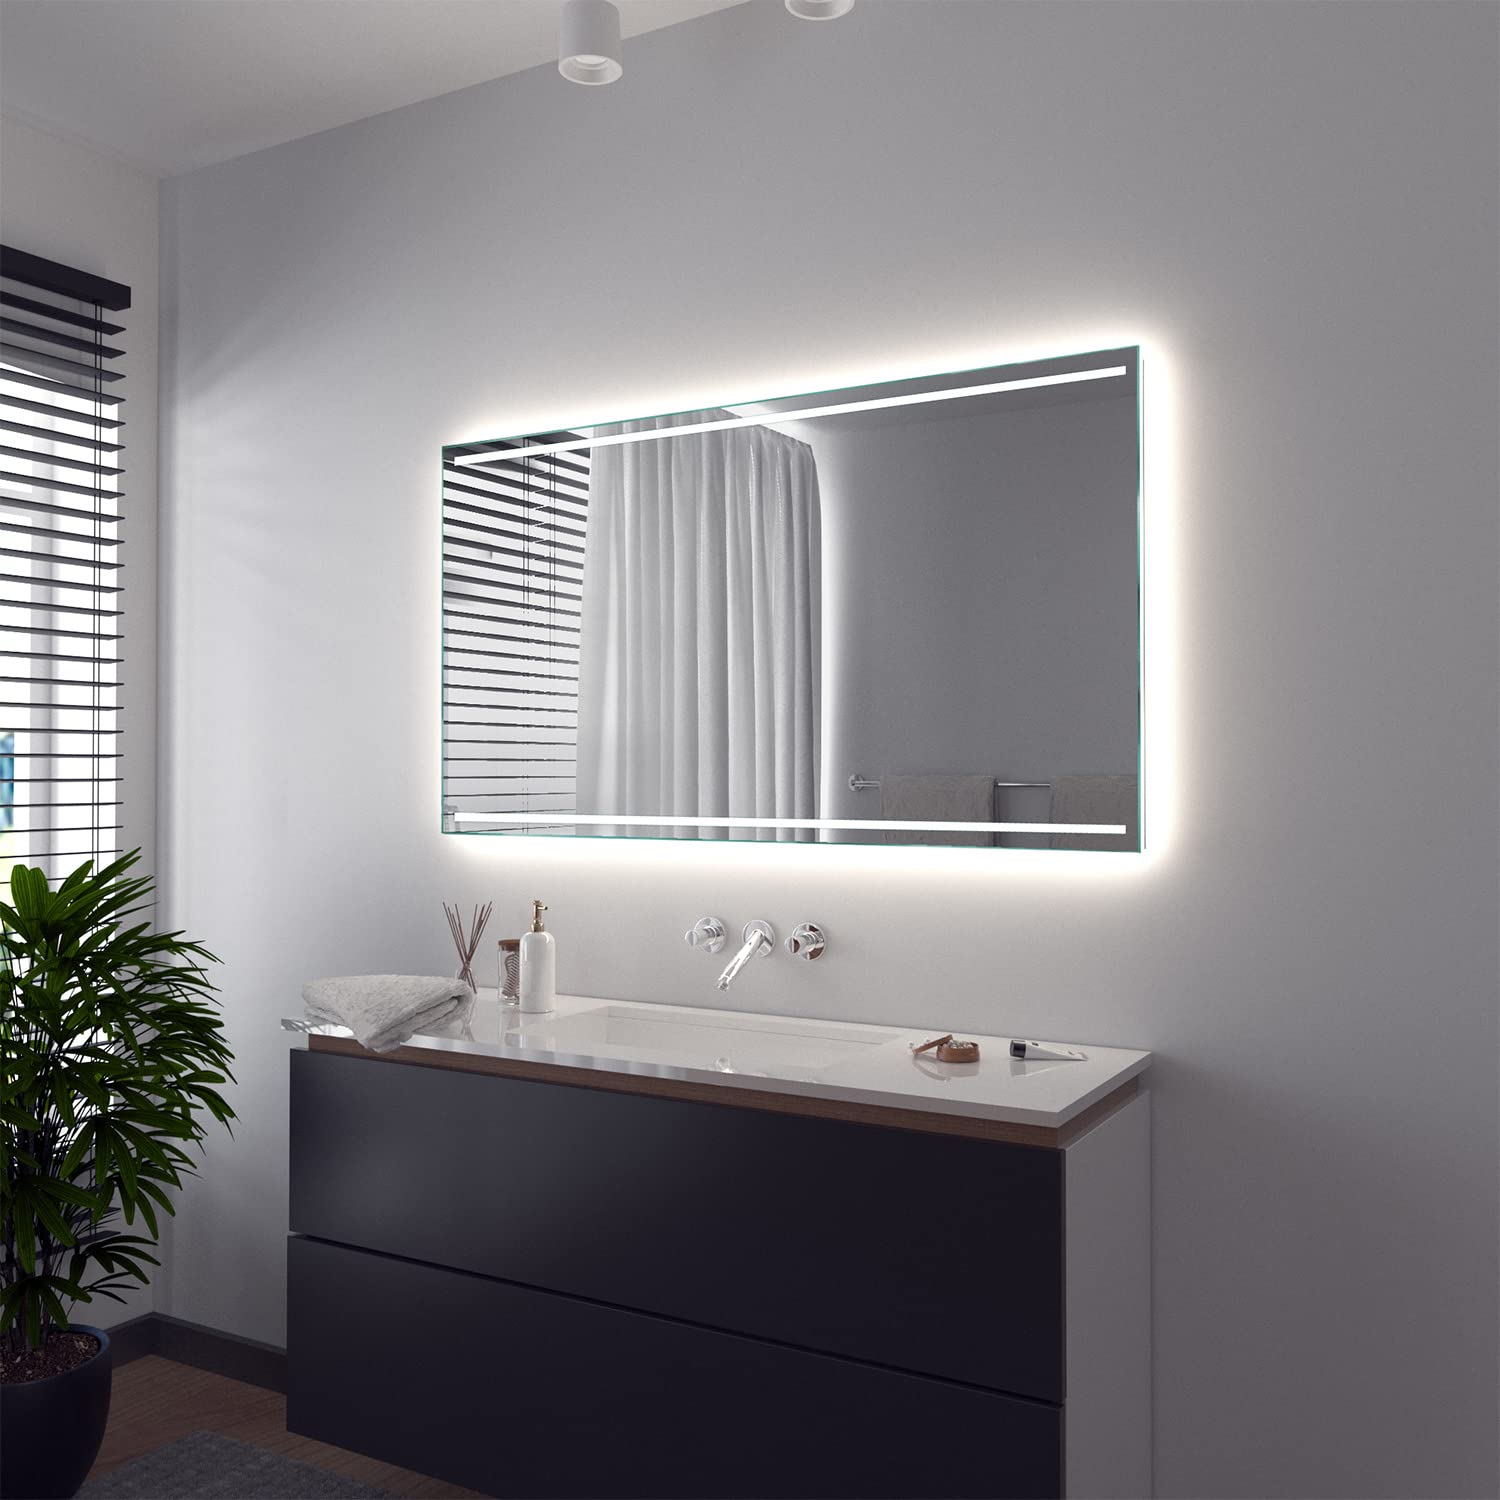 SARAR Wandspiegel mit integriertem LED-Beleuchtung 150x60 cm Made in Germany Casoria Badspiegel Spiegel mit Beleuchtung Badezimmerspiegel nach-auf Maß